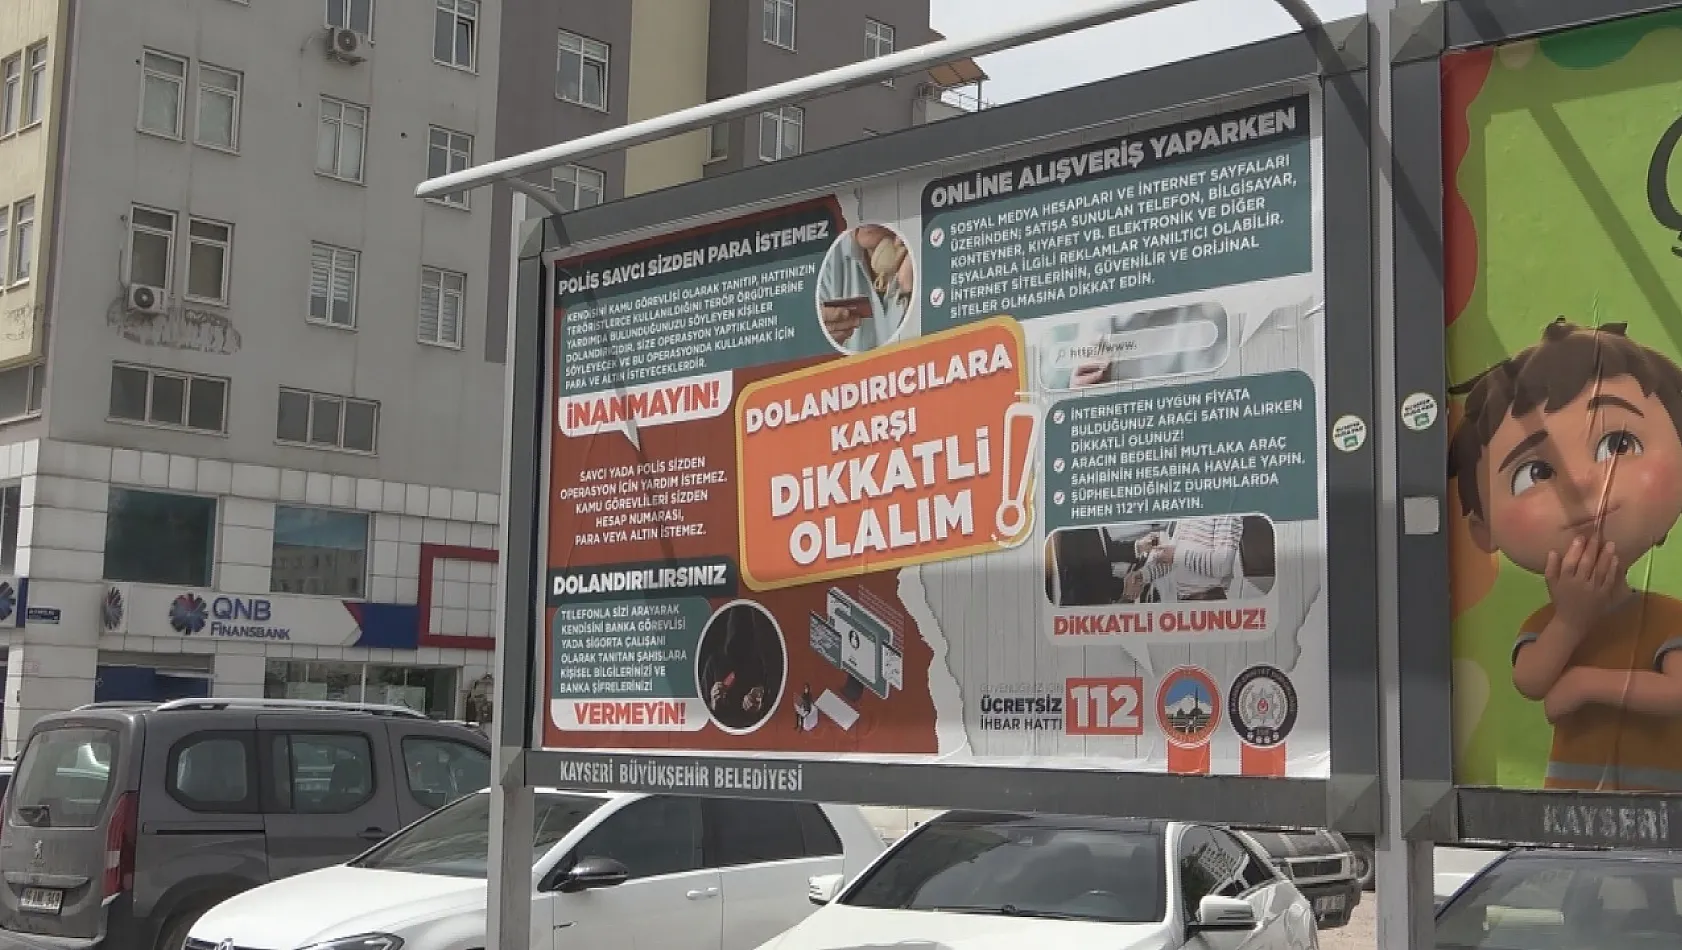 Kayseri'de bilboardlu uyarı! Valilik vatandaşları uyardı